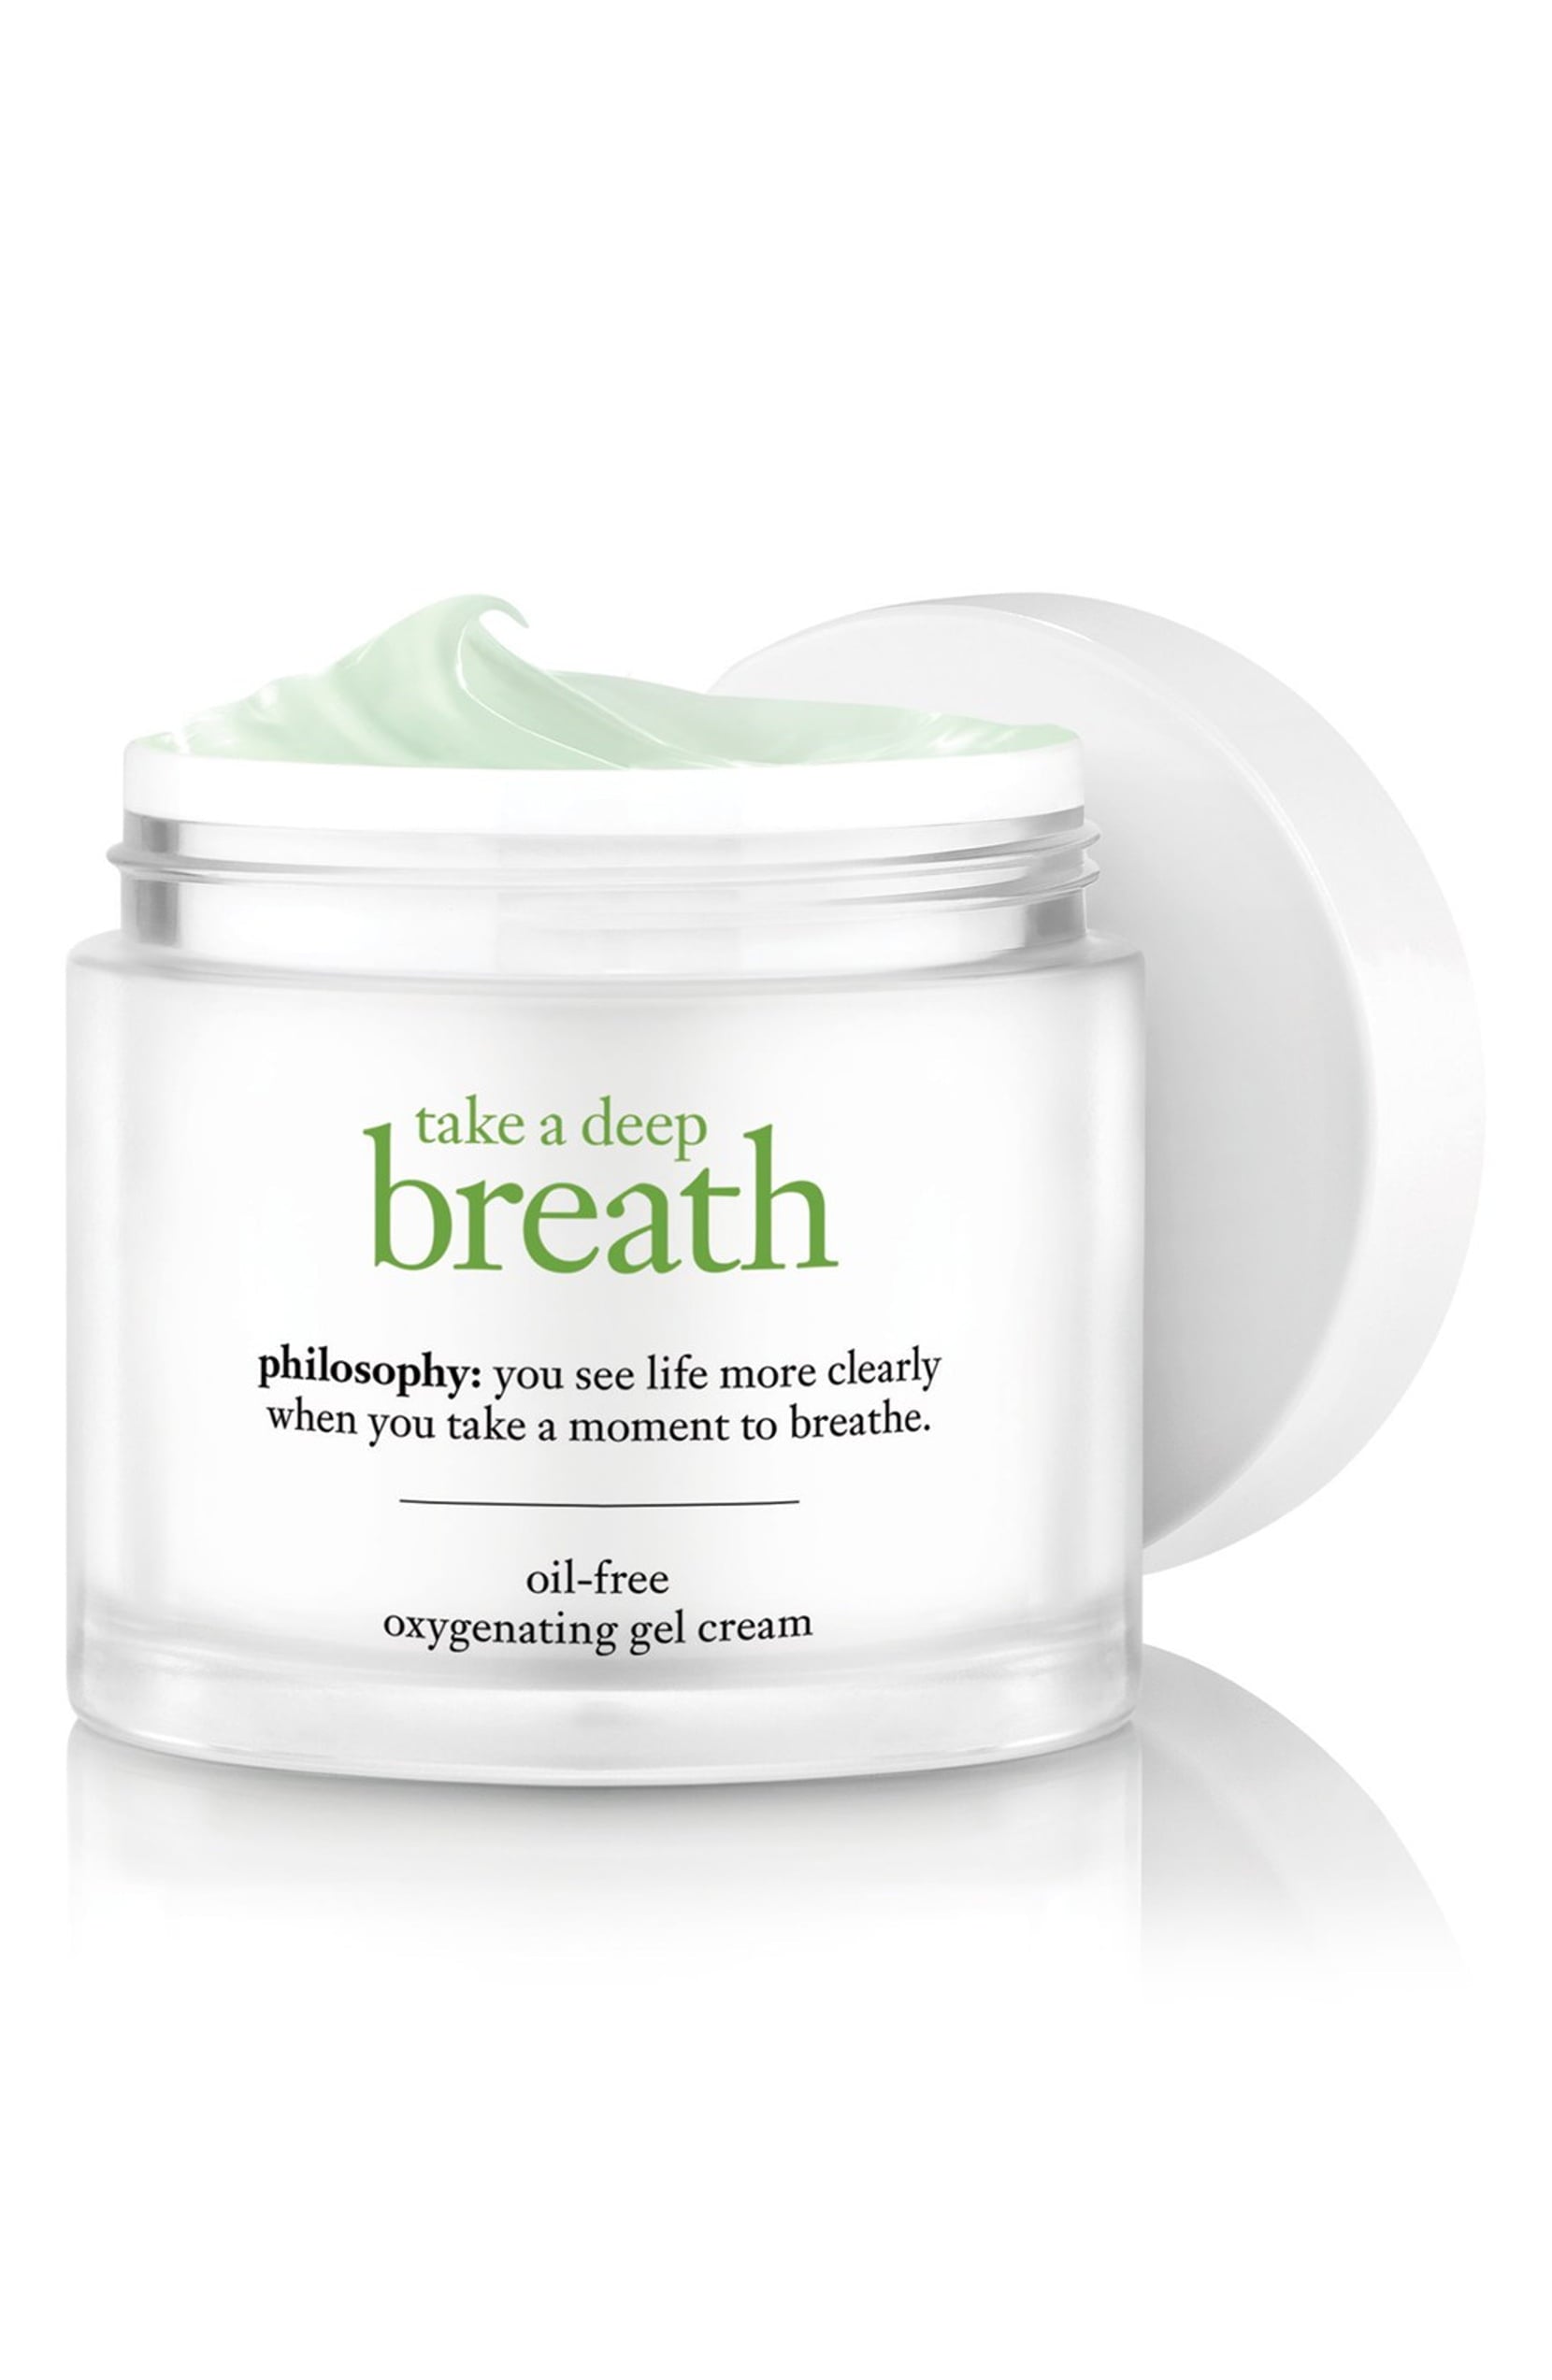 philosophy take a deep breath oil-free oxygenating gel cream